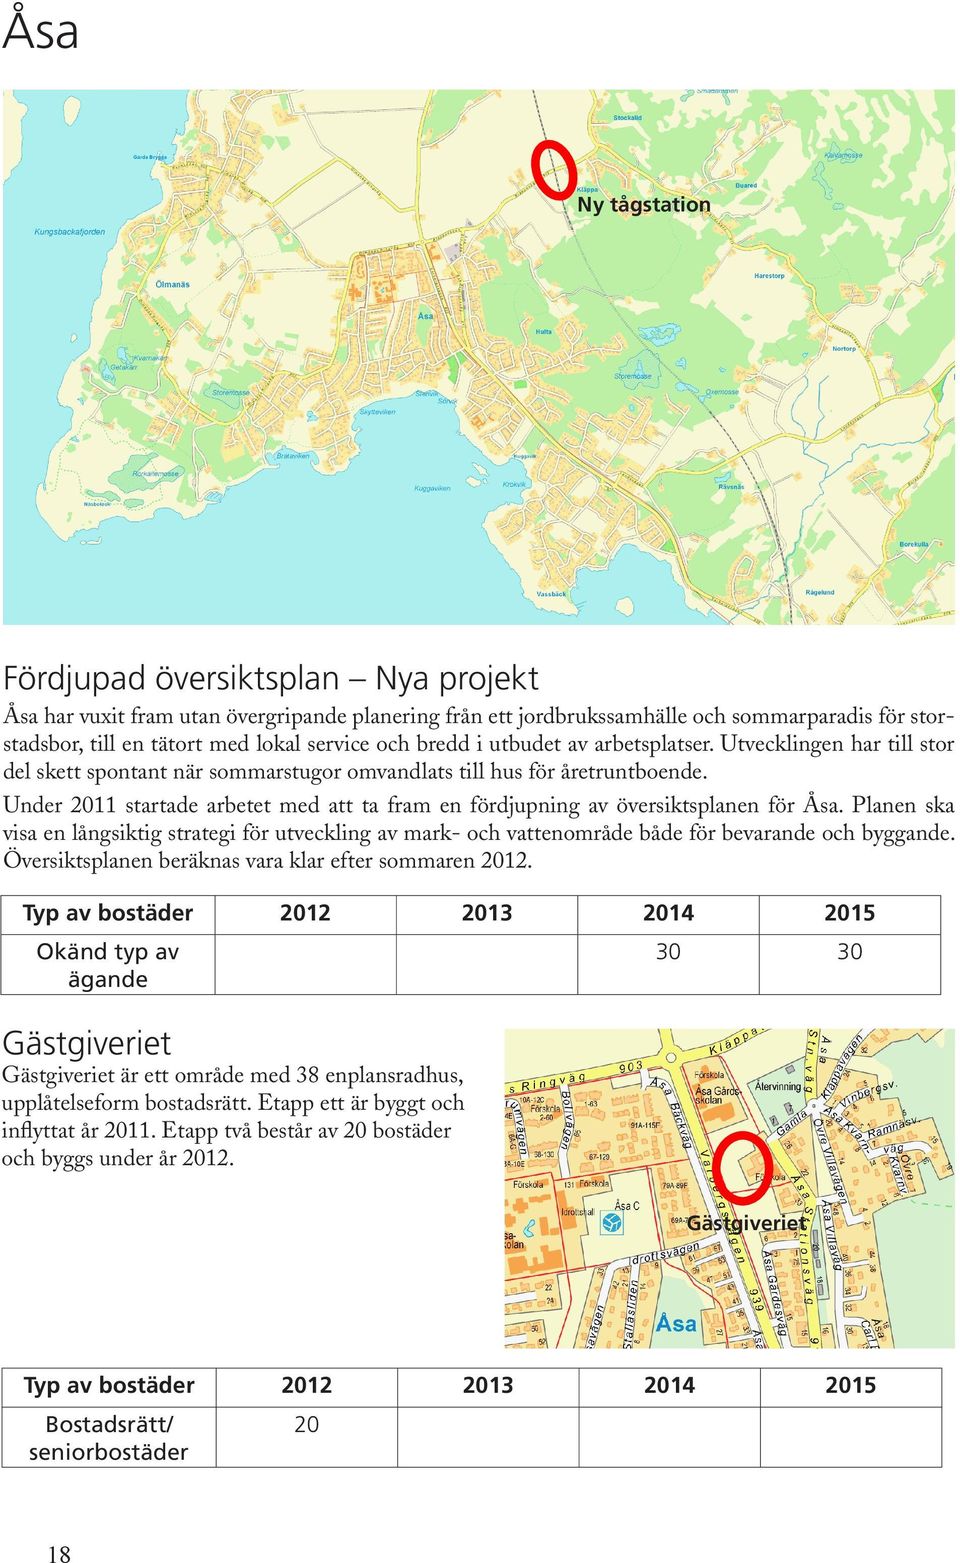 Under 2011 startade arbetet med att ta fram en fördjupning av översiktsplanen för Åsa. Planen ska visa en långsiktig strategi för utveckling av mark- och vat tenområde både för bevarande och byggande.